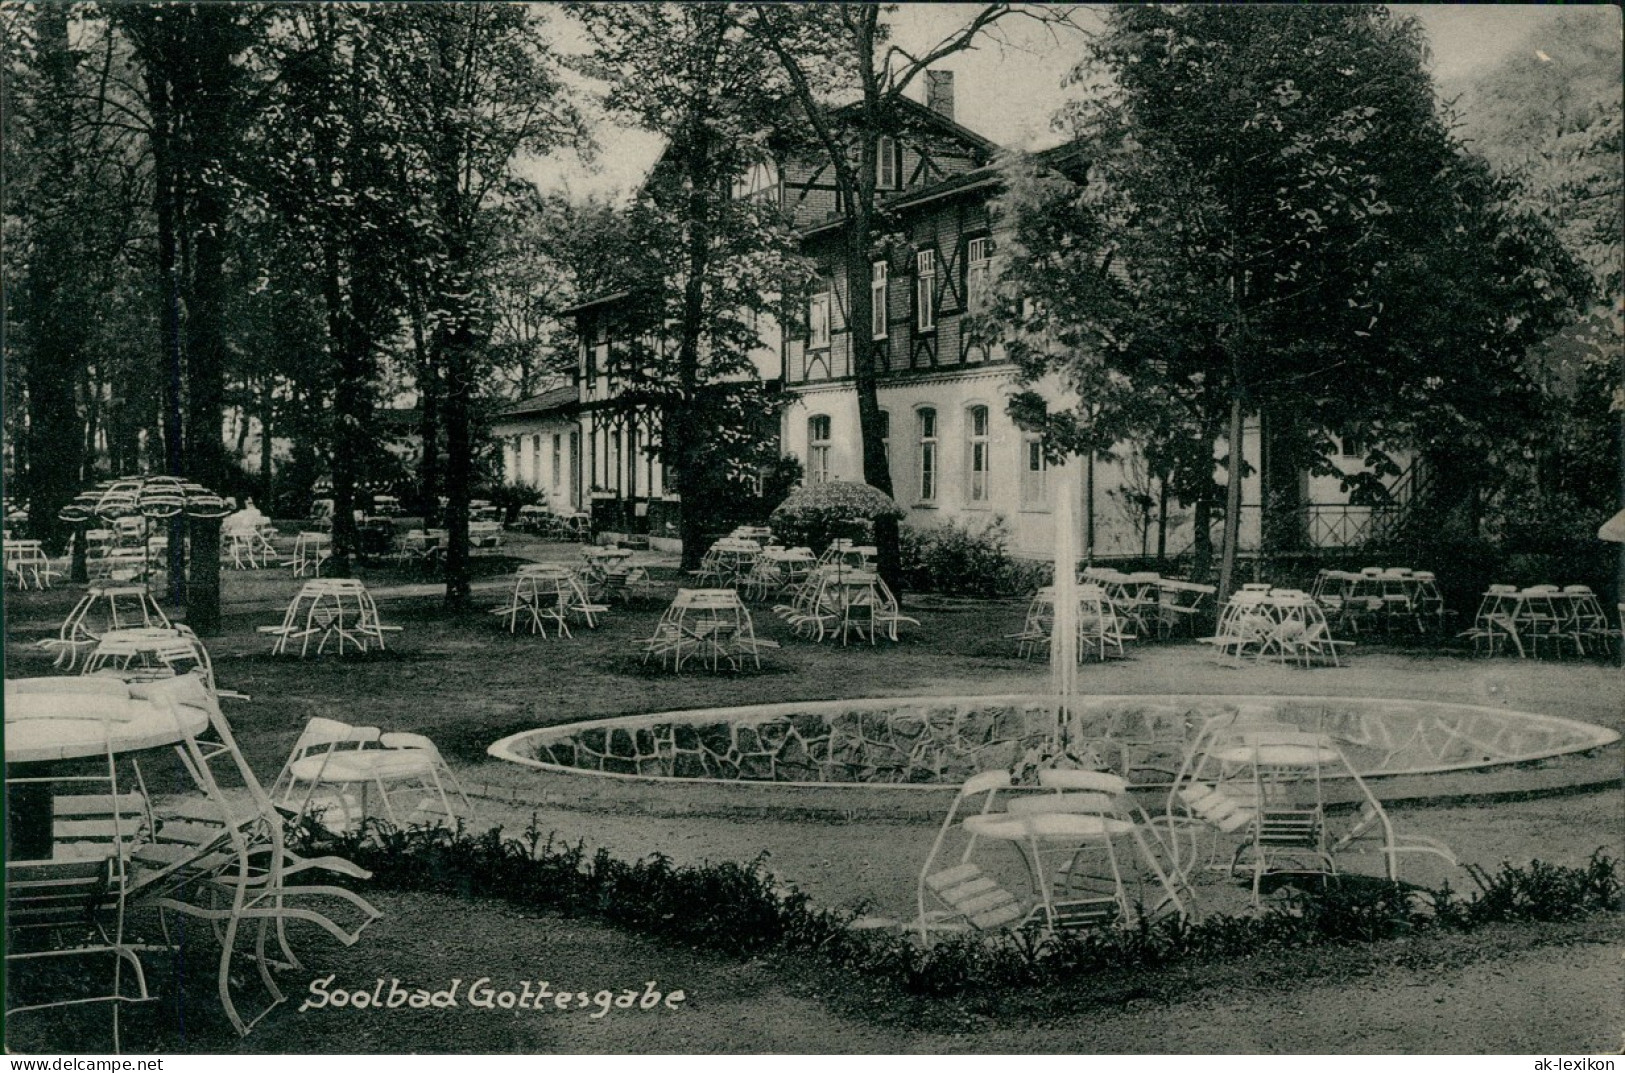 Ansichtskarte Rheine Westfalen Soolbad Gottesgabe Garten - Bentlage 1938 - Rheine